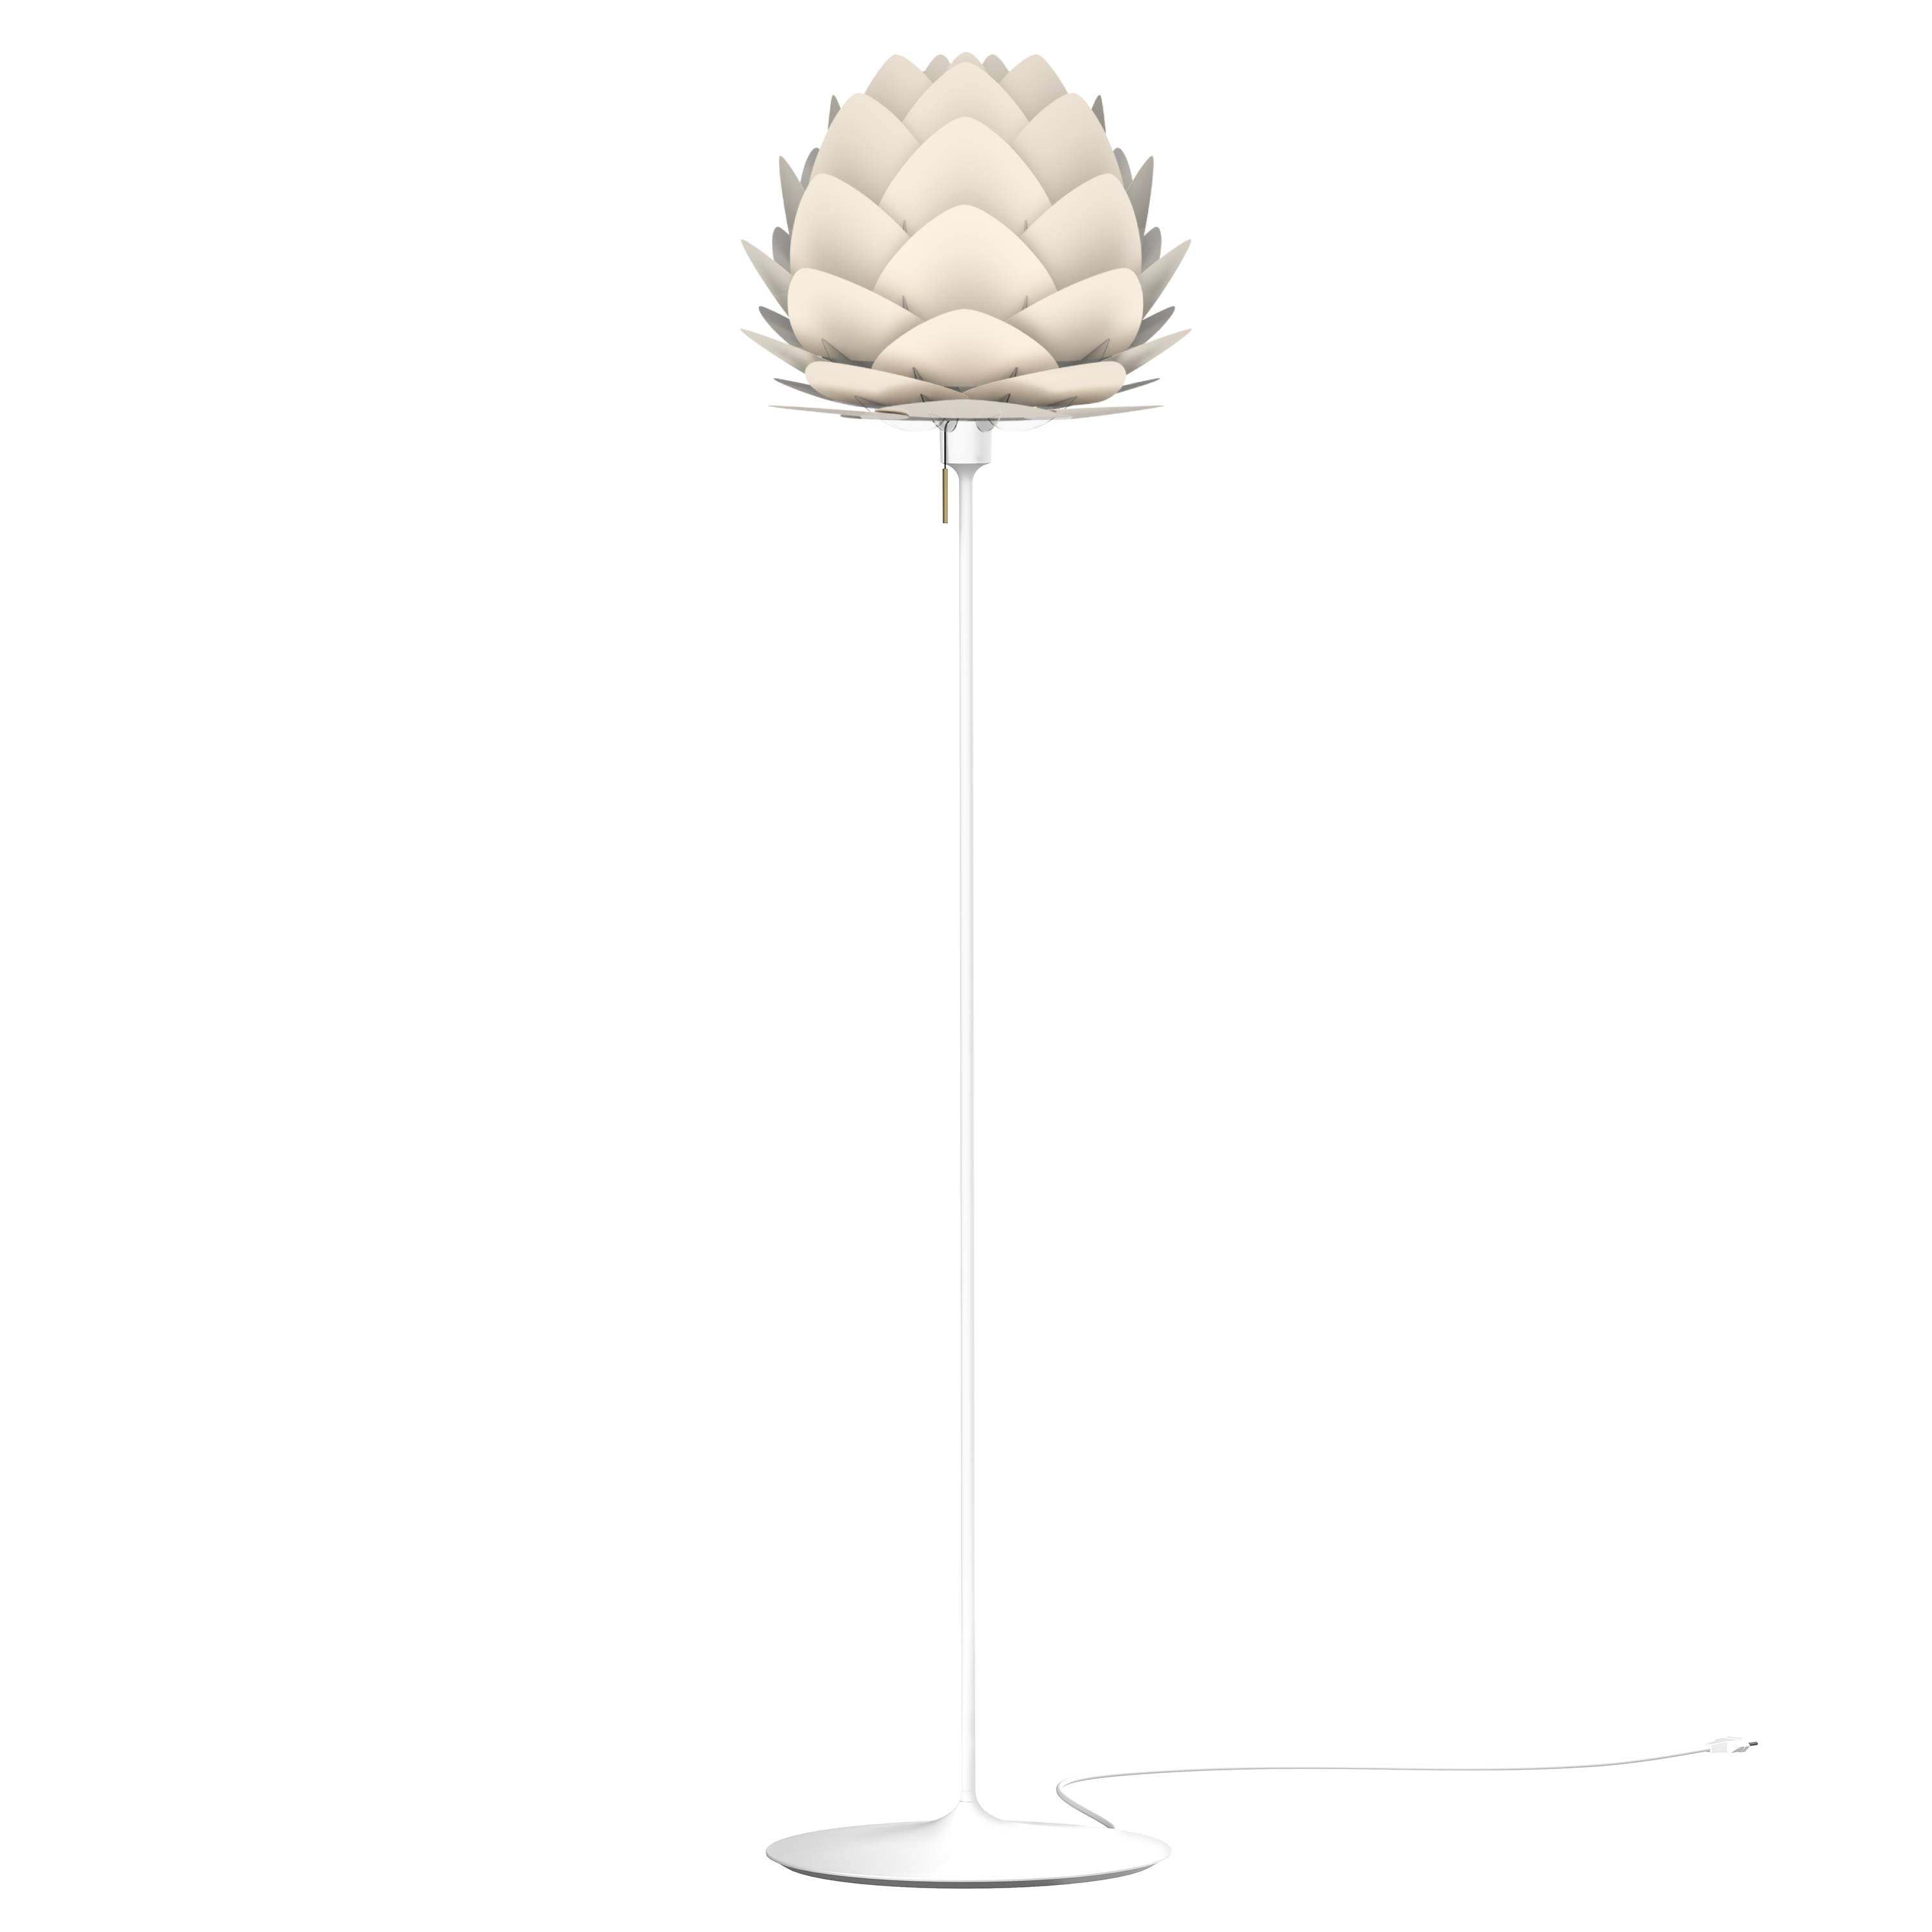 Aluvia Champagne Floor Lamp: Medium - 23.3